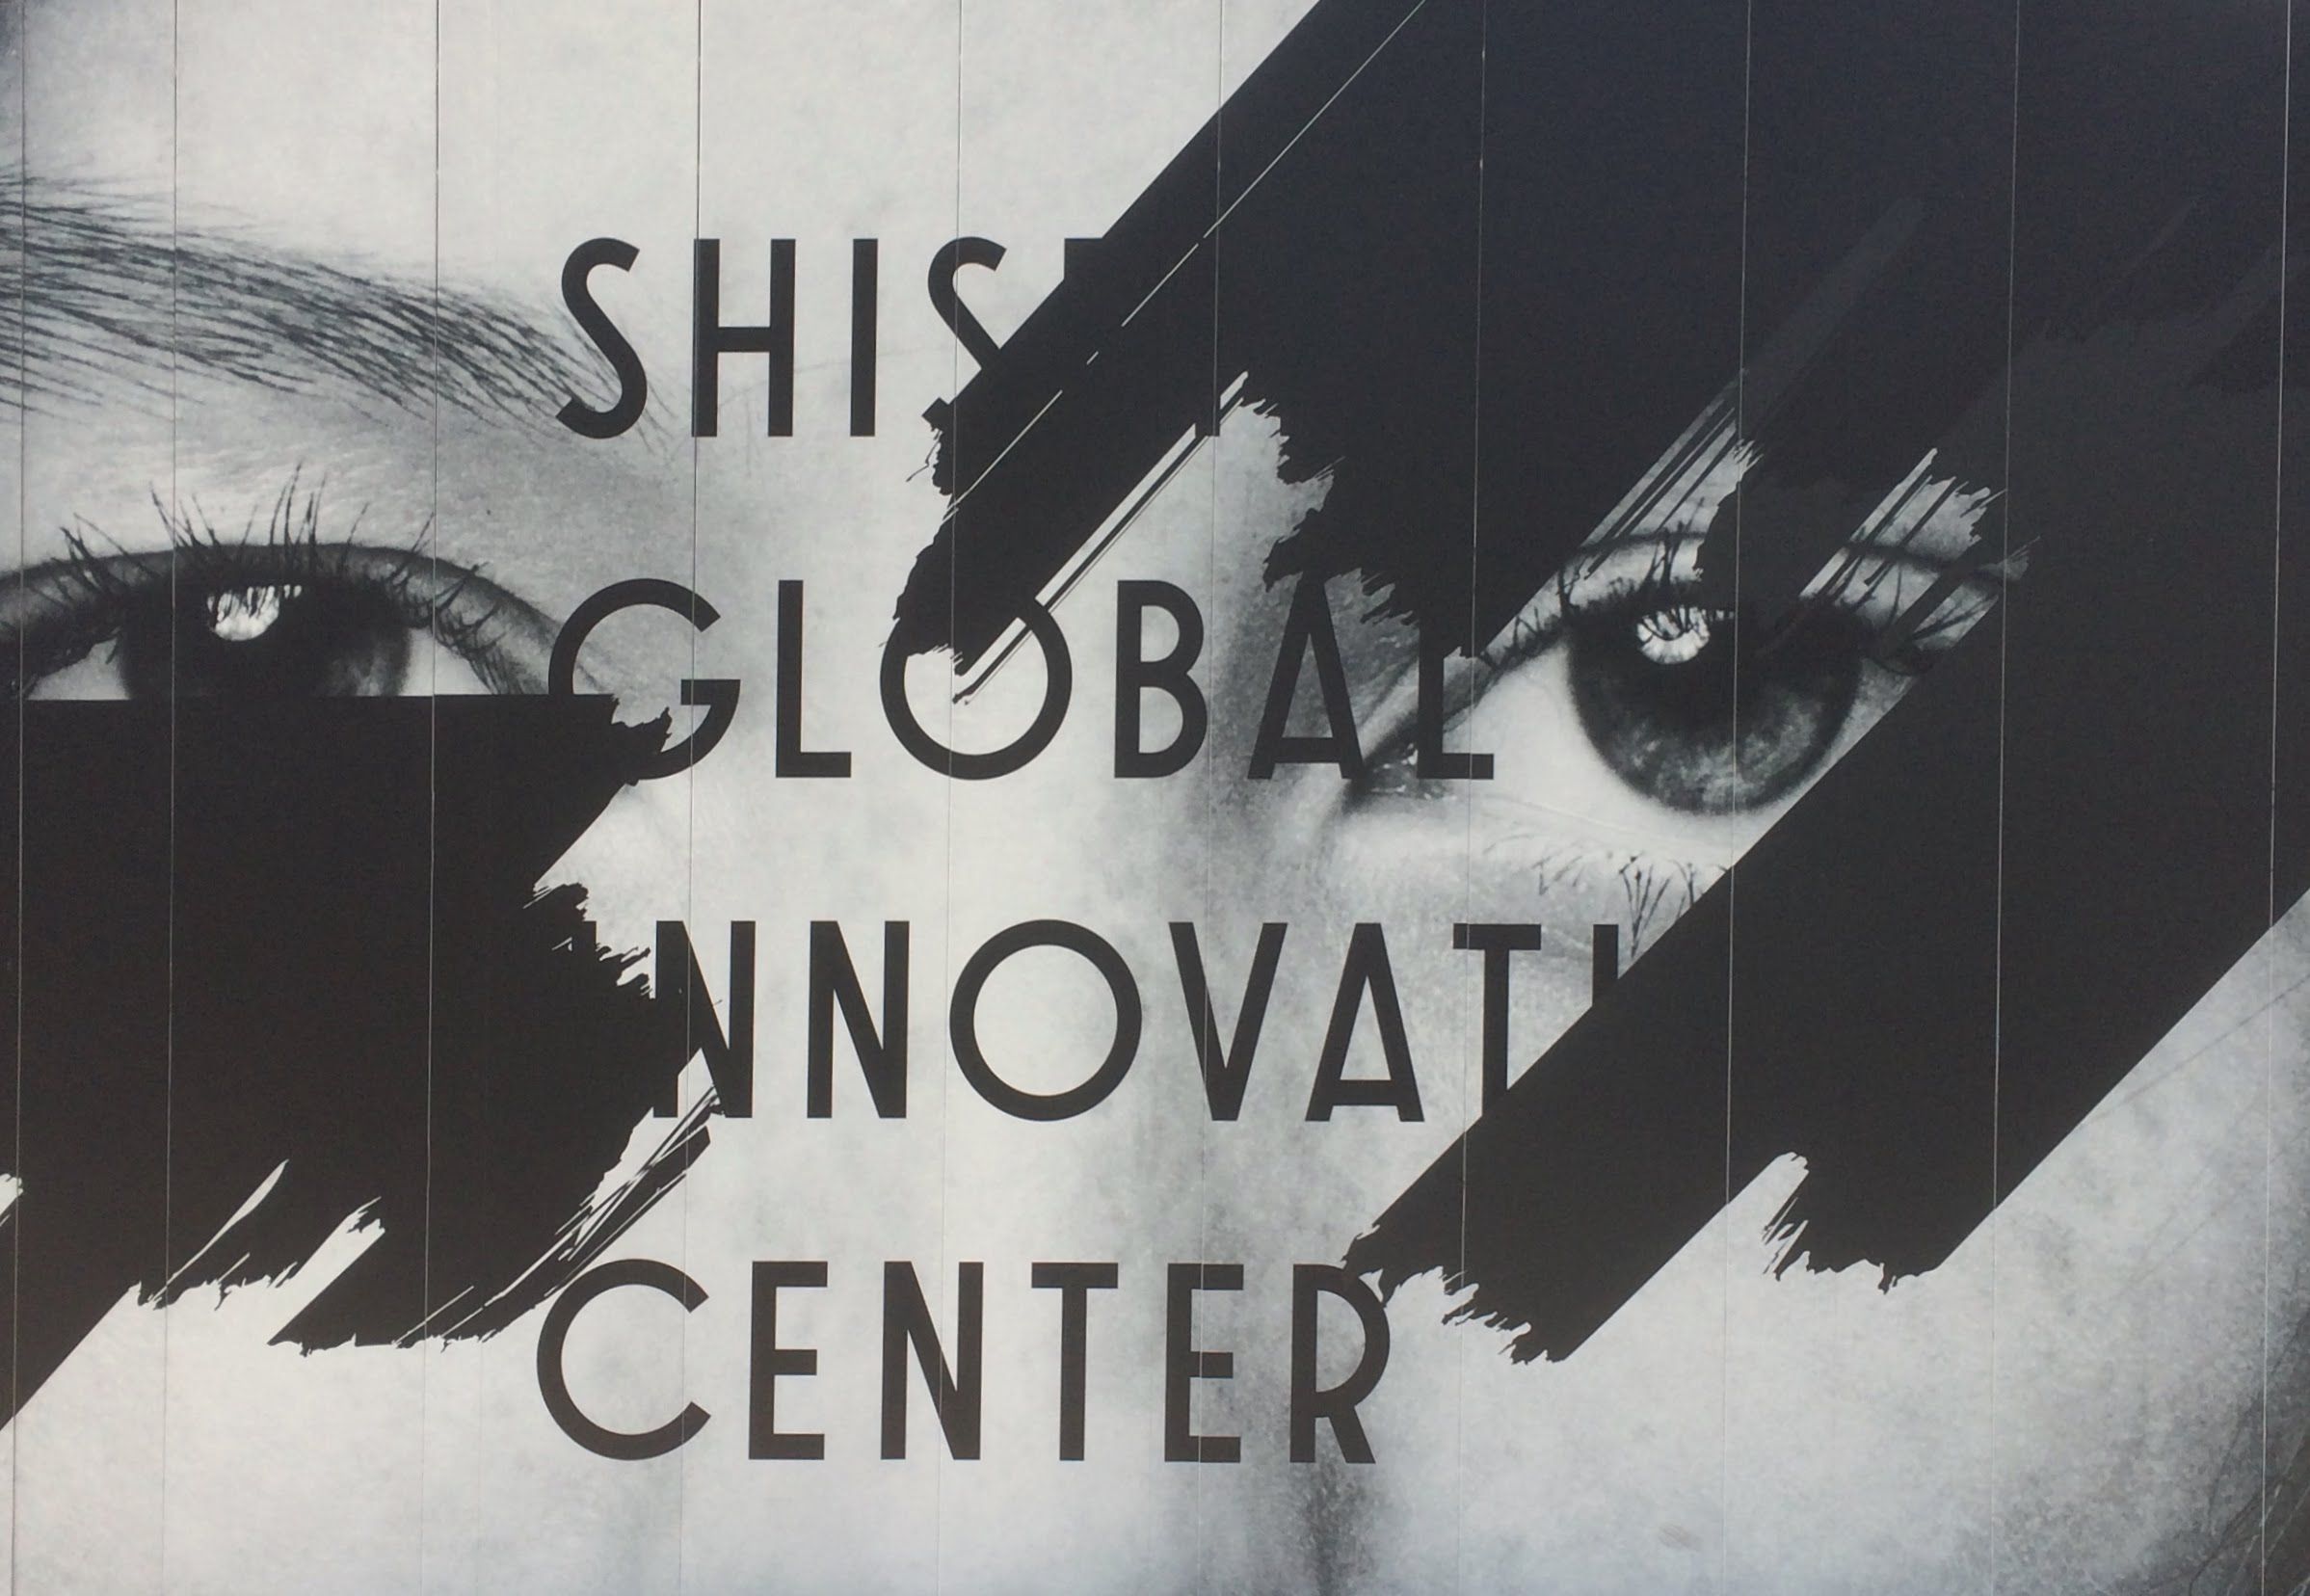 モノクロの顔写真にShiseido Global Innovation Centerの文字を重ね、上から黒のブラシで少し塗りつぶしたプリント。